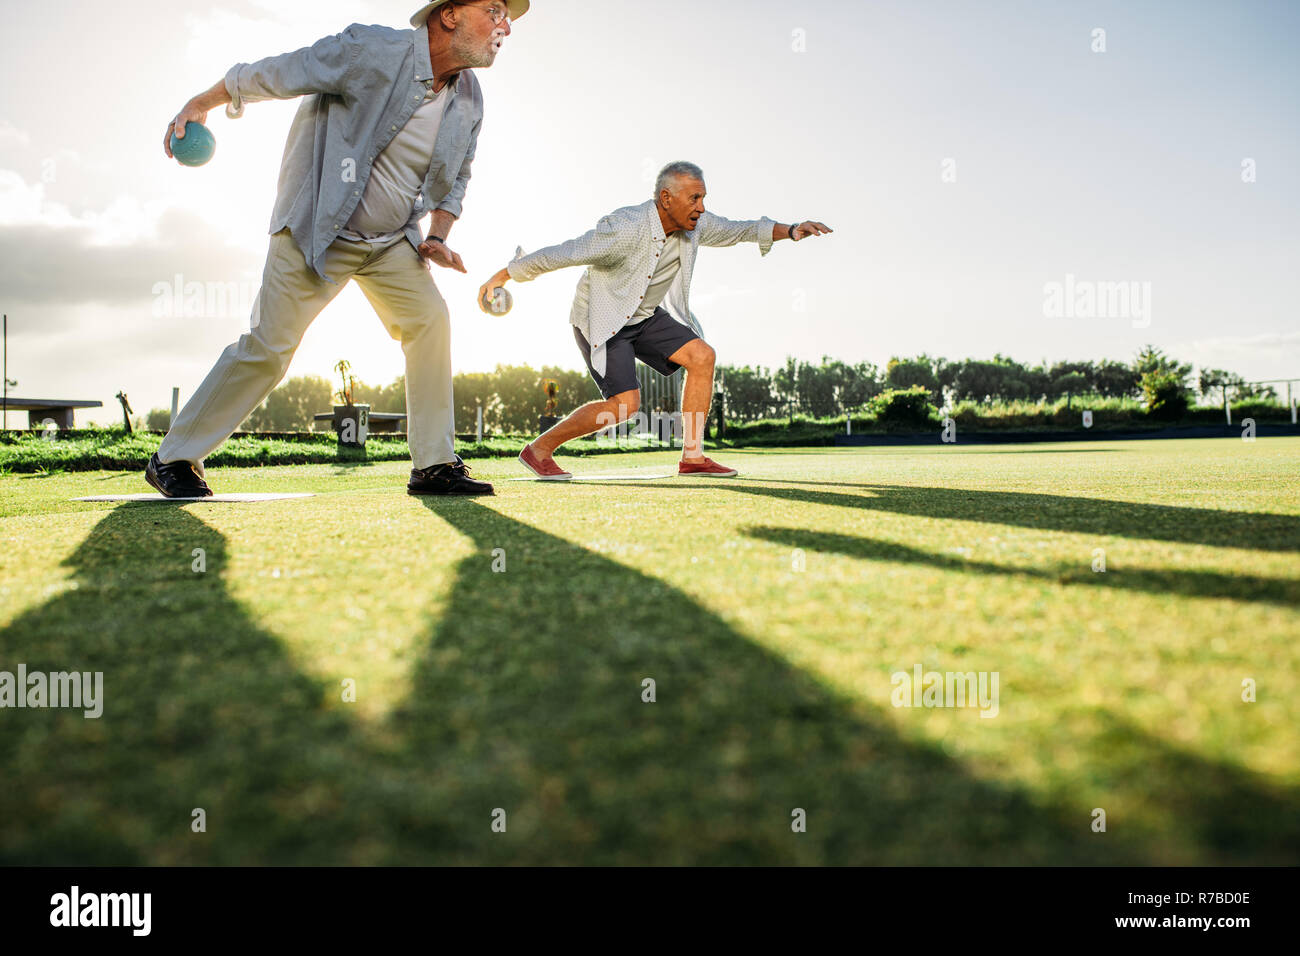 Menschen spielen eine Partie Boule in eine Wiese mit Sonne in den Hintergrund. Zwei ältere Personen nach vorne beugen Boule mit ihren Schatten auf dem Boden zu werfen Stockfoto